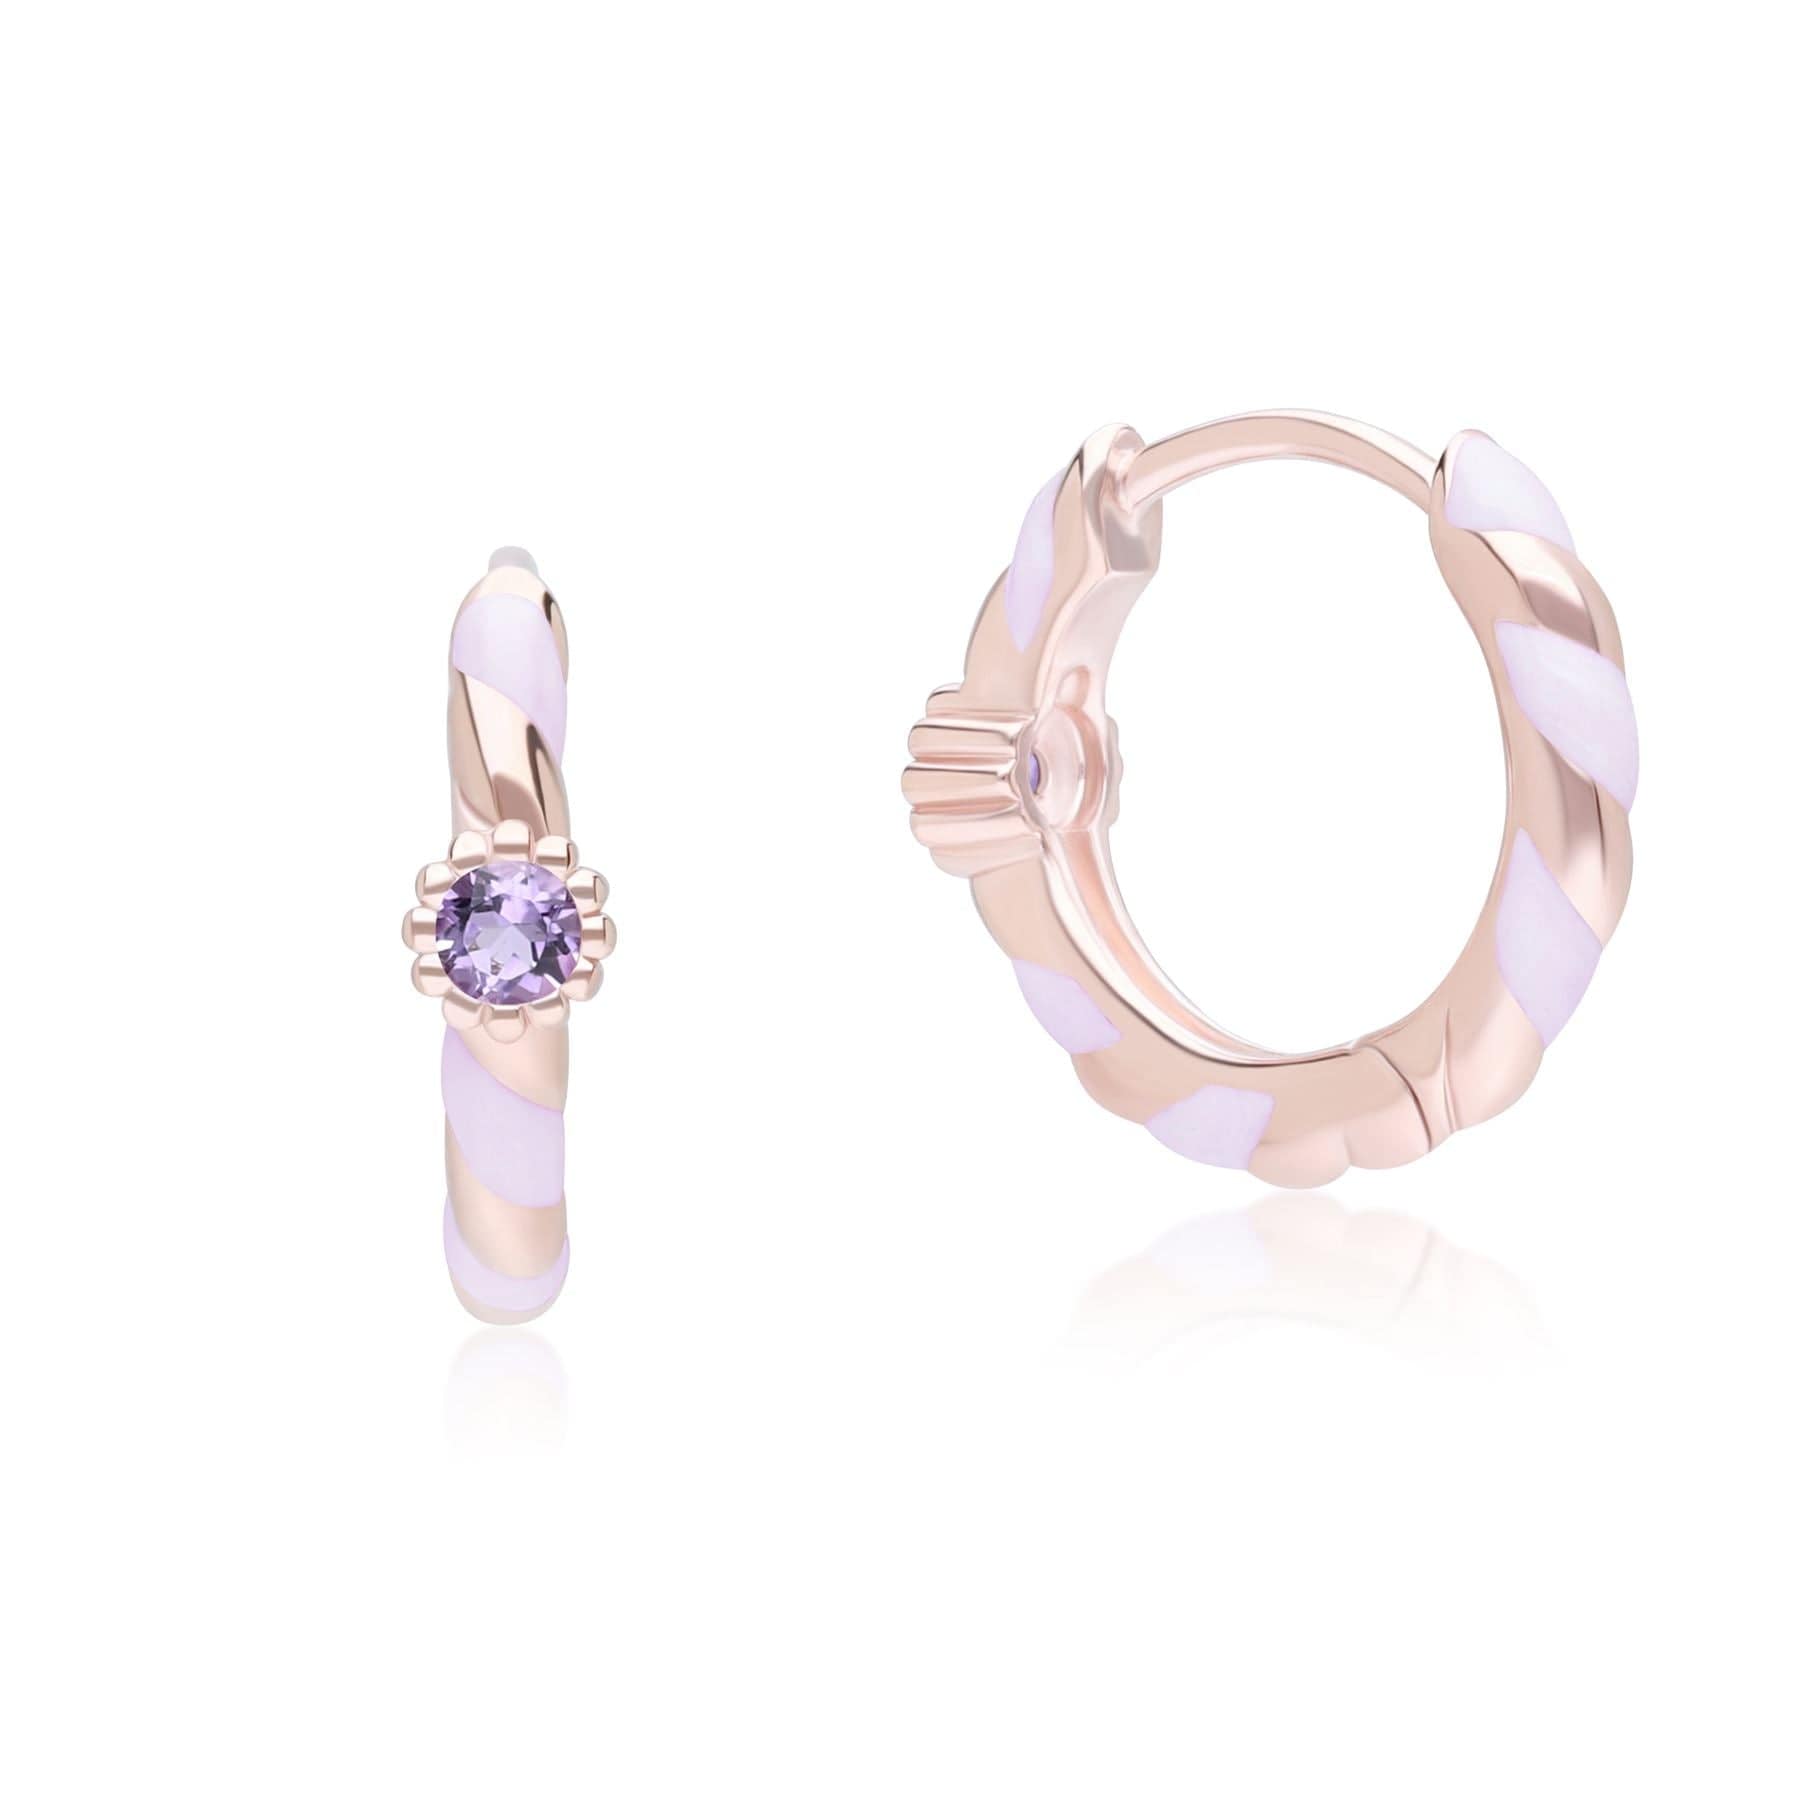 Siberian Waltz Violet Enamel & Round Pink Amethyst Hoop Earrings In 18ct Rose Gold Plated Sterling Silver